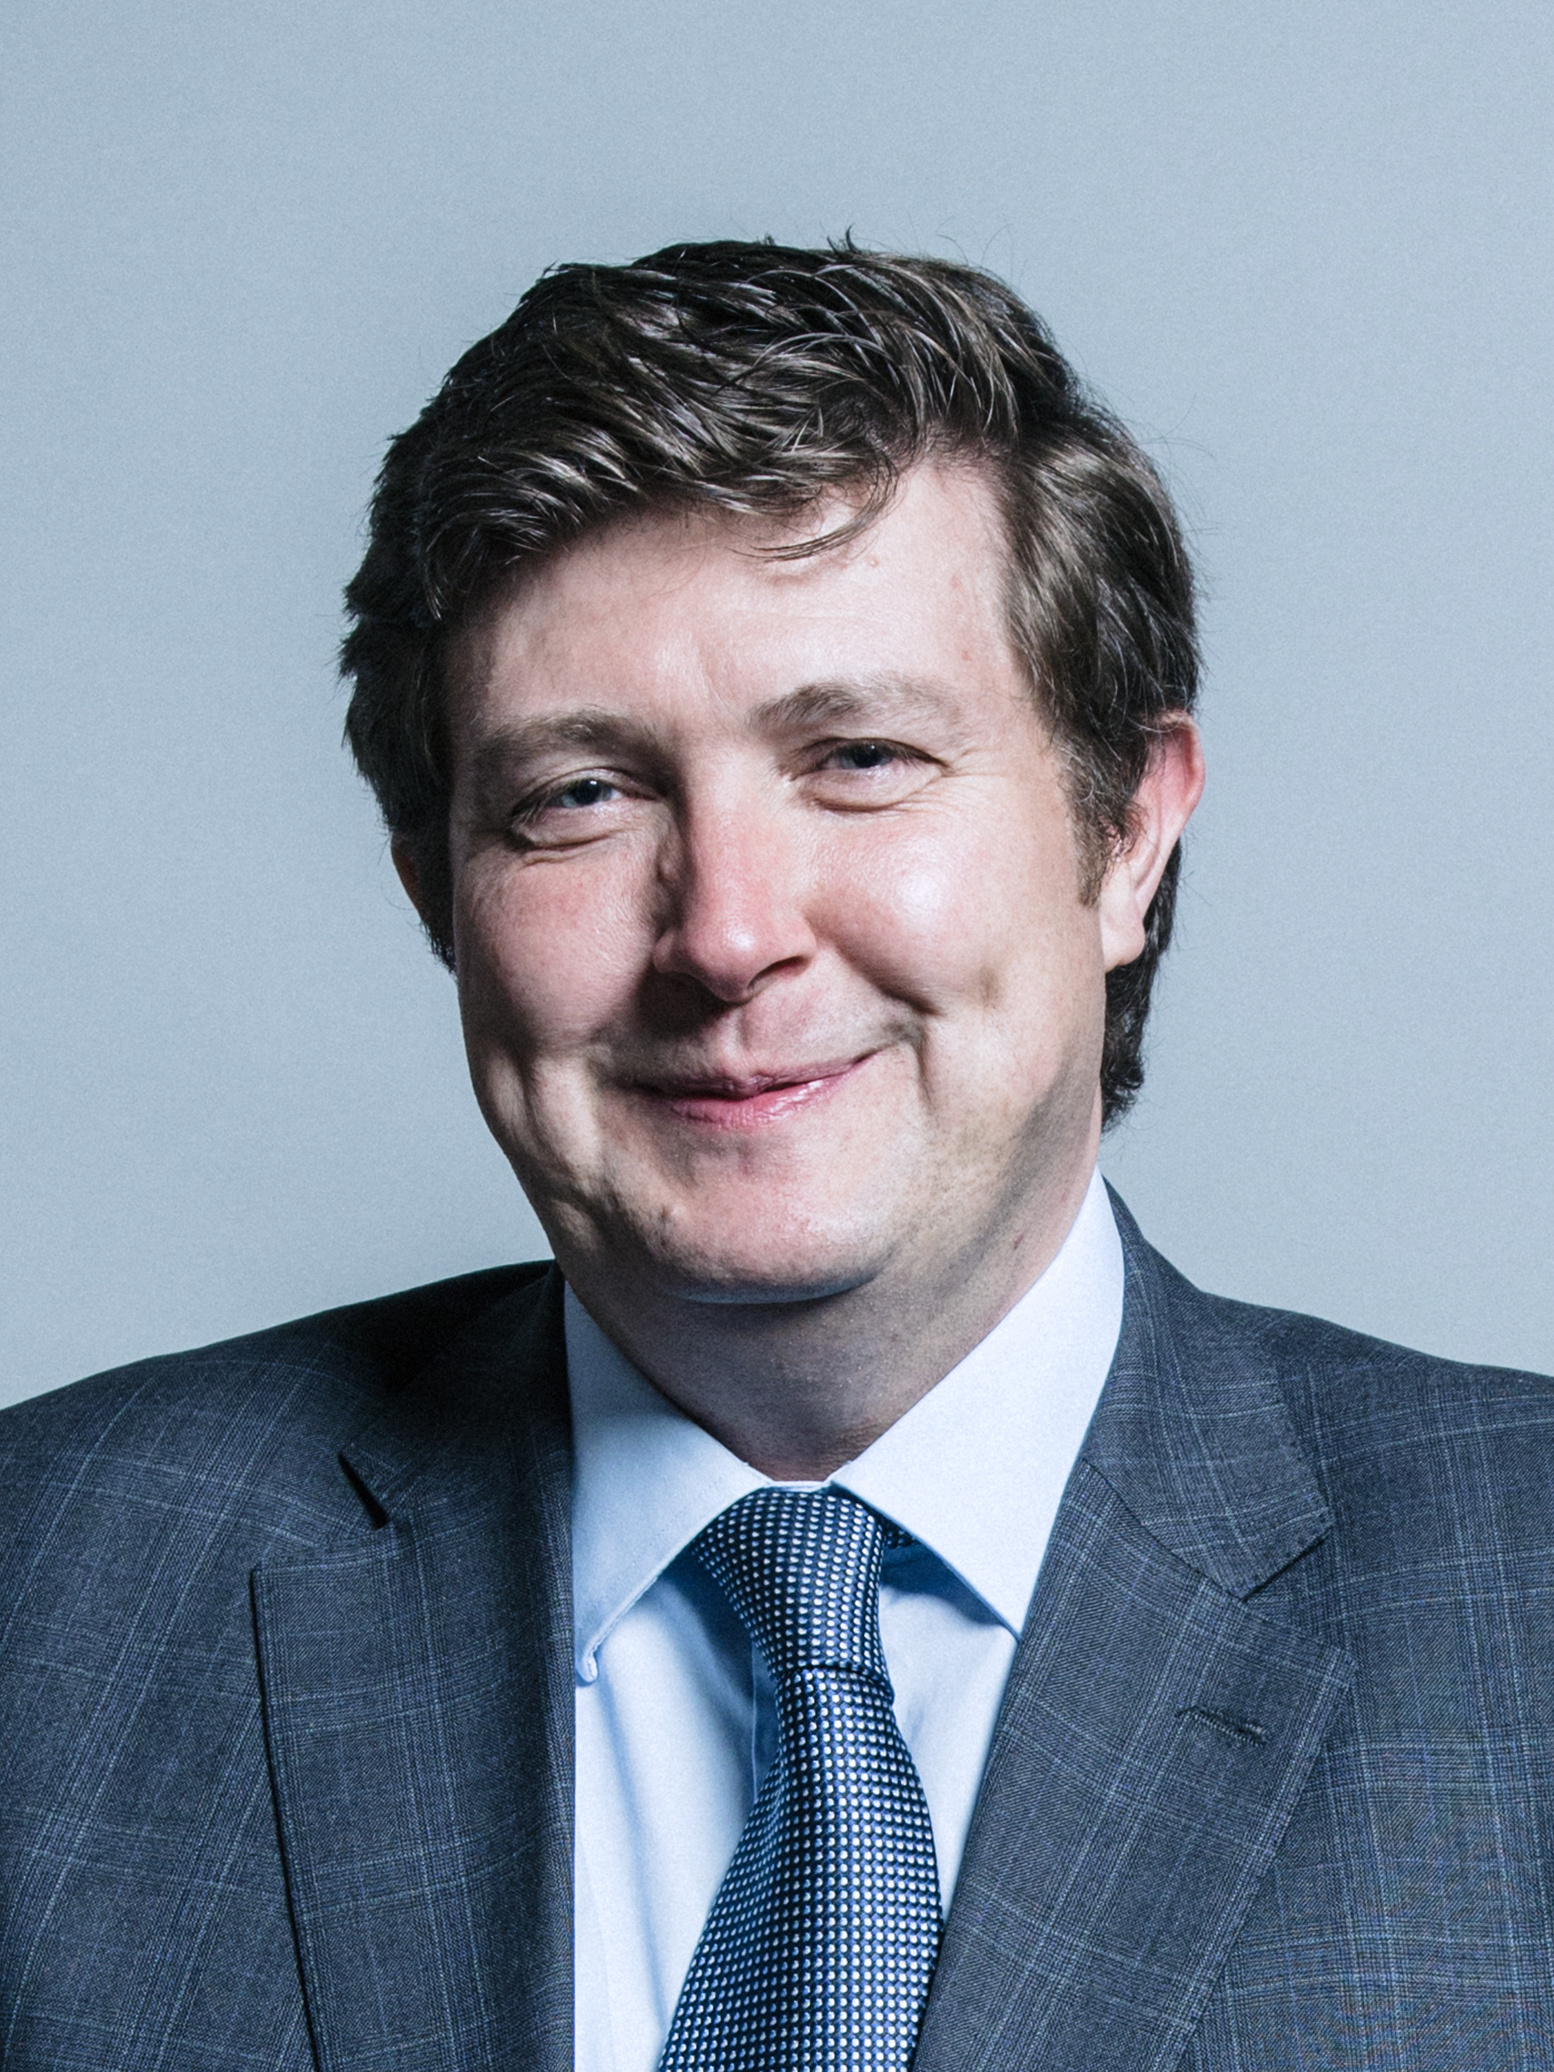 Andrew Lewer MP